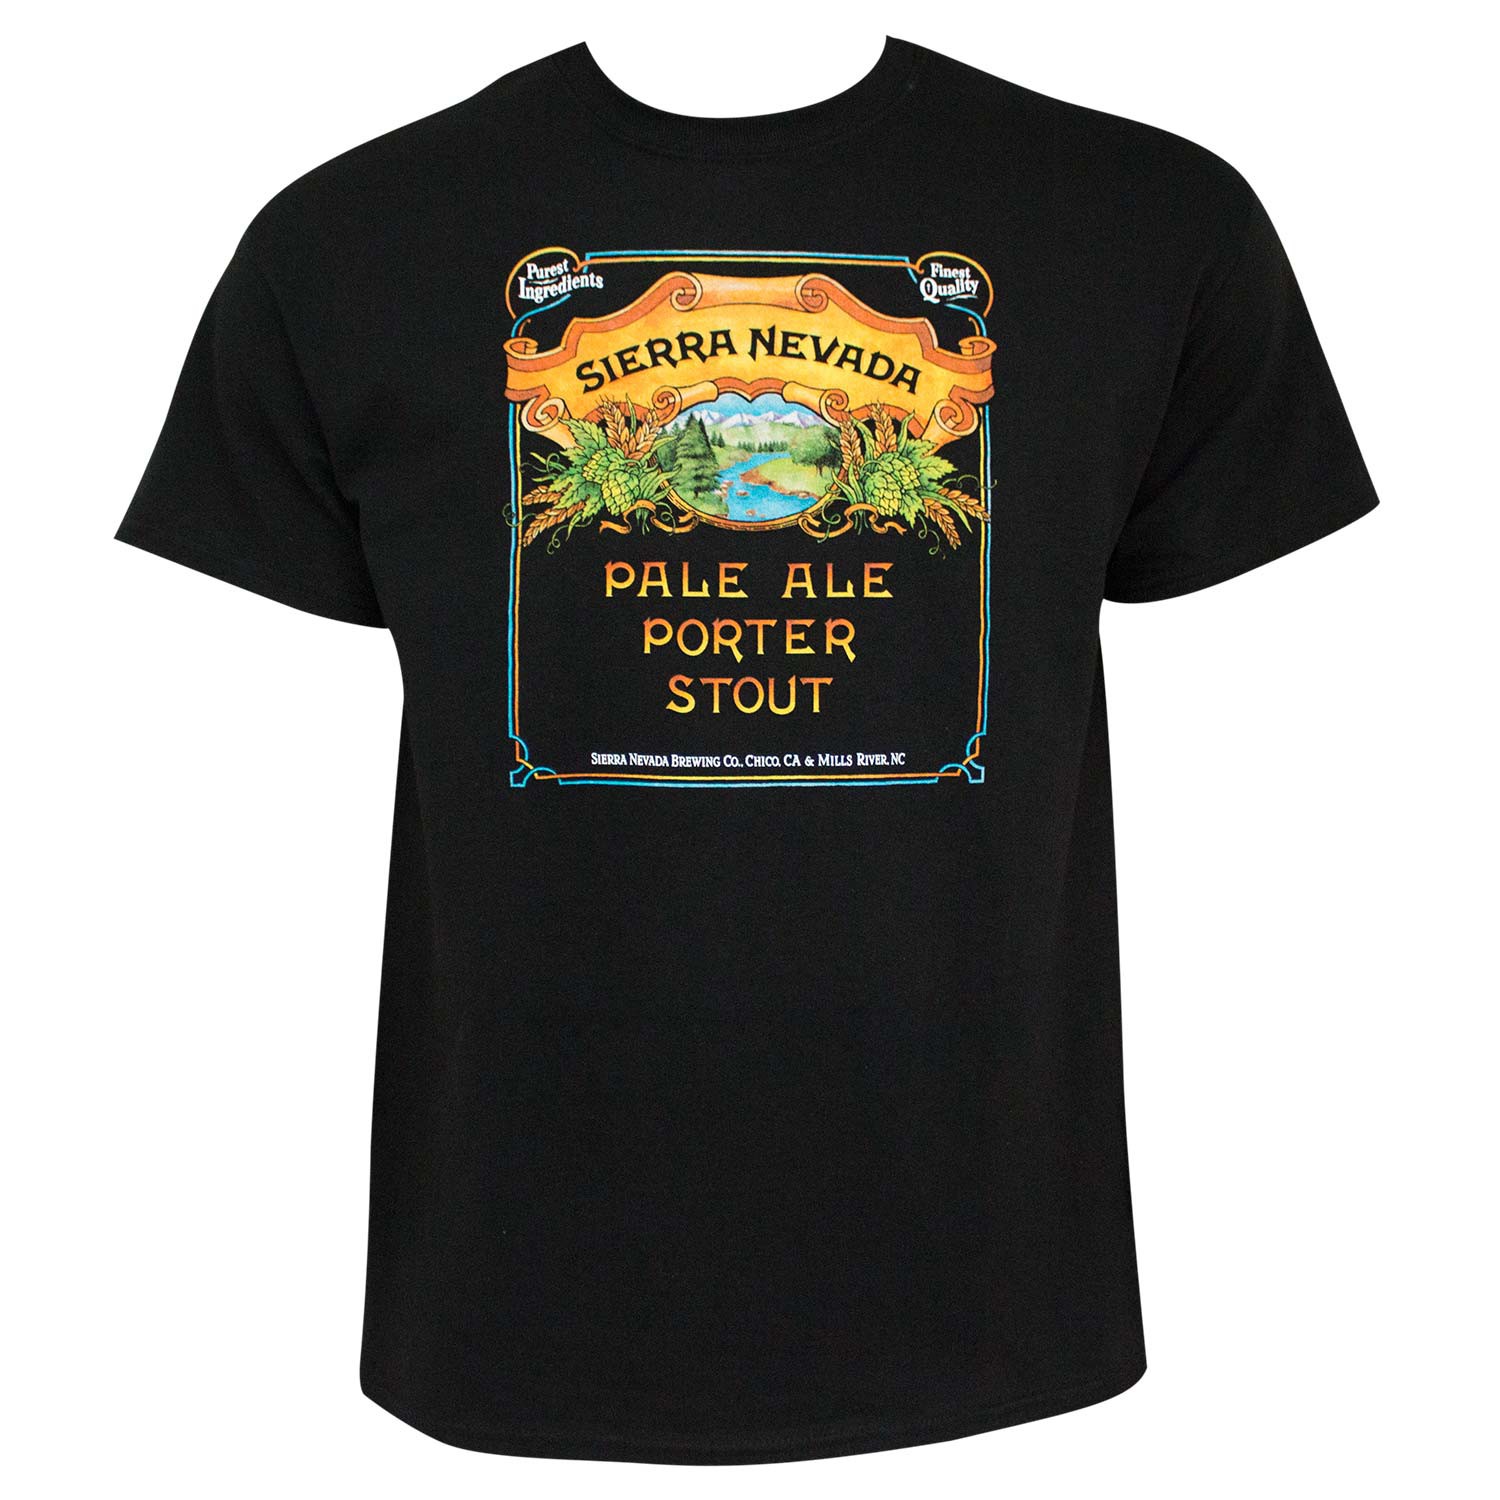 Sierra Nevada Pale Ale Porter Stout Men's Black T-Shirt